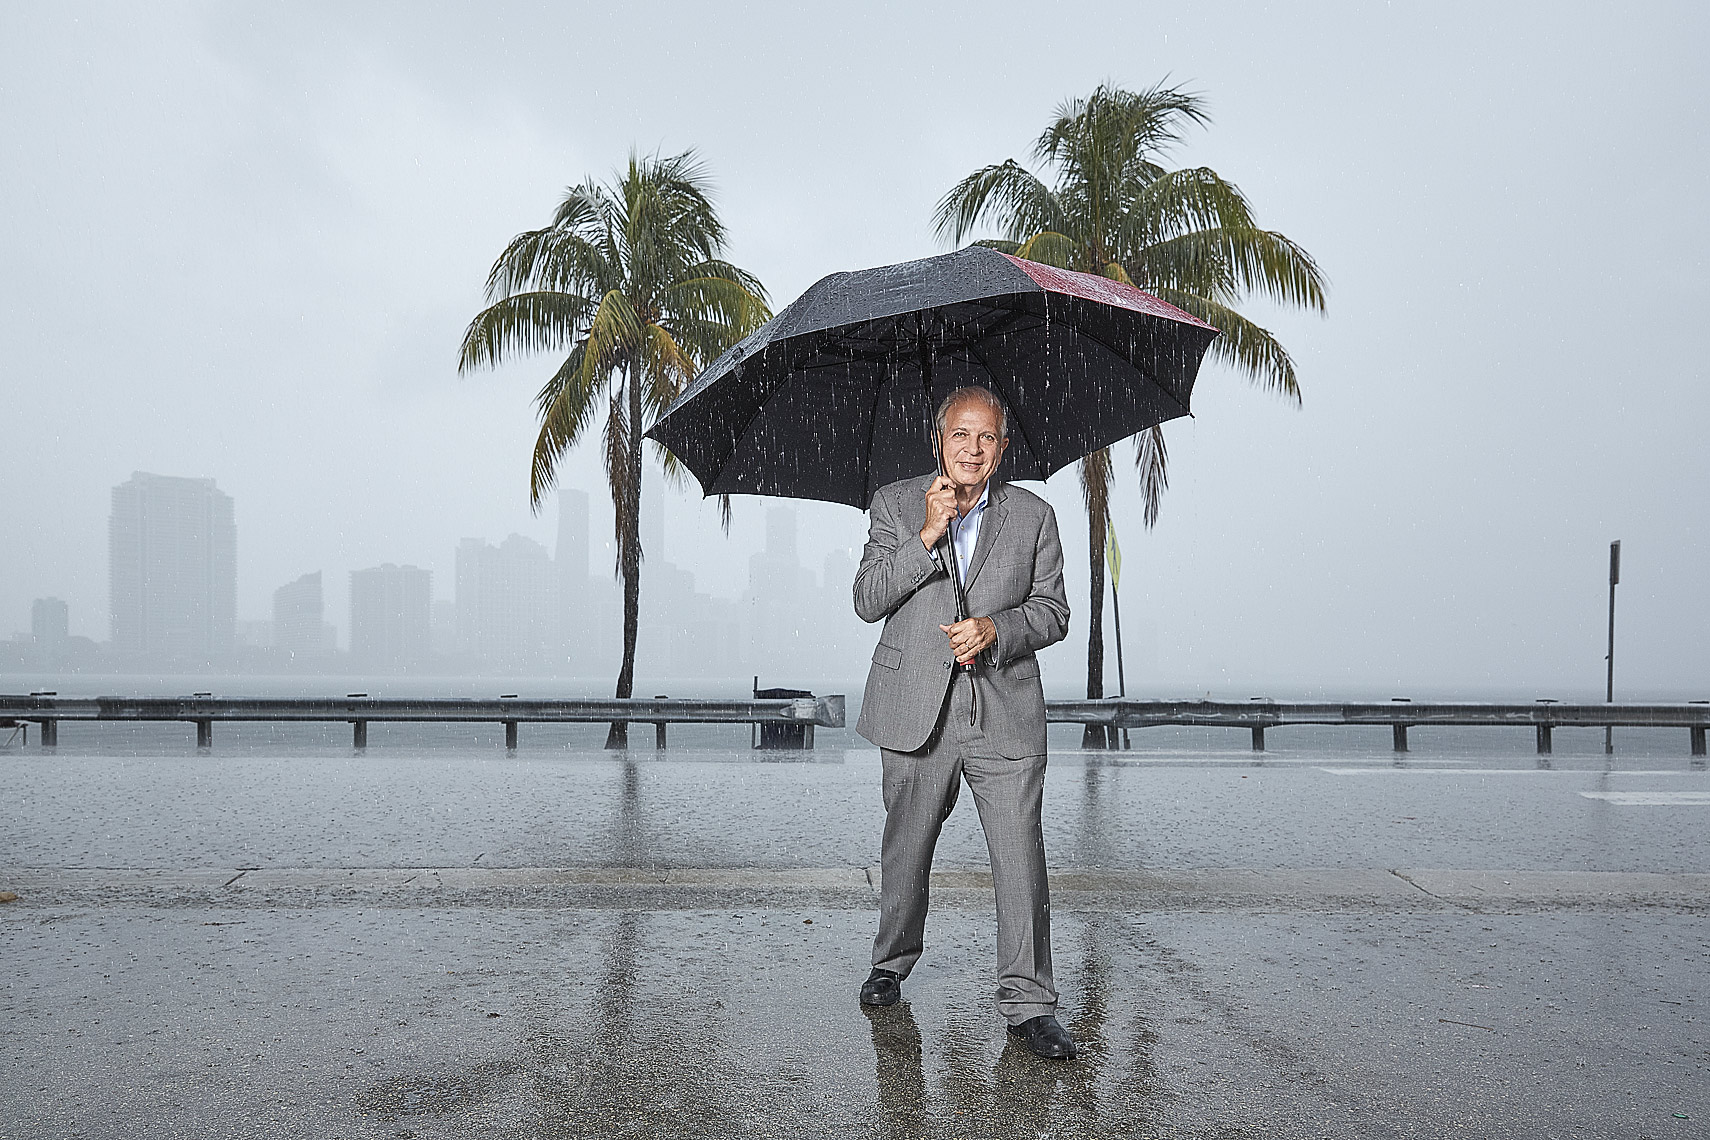 Miami Mayor Tomas Regalado 